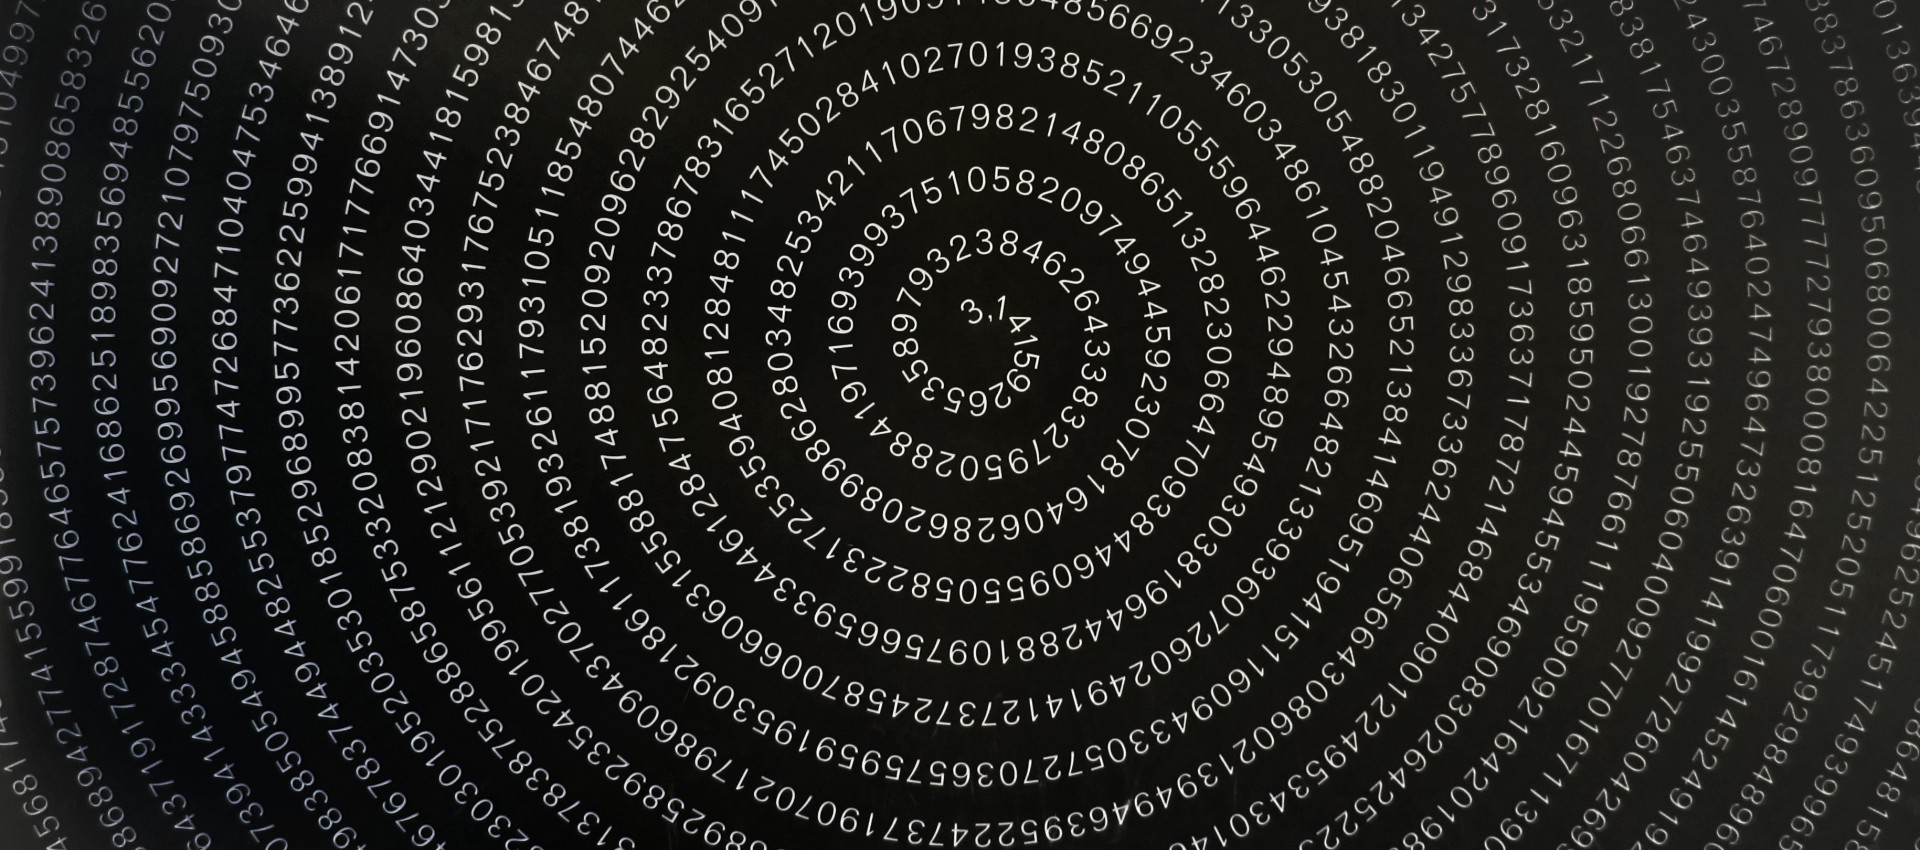 Spirala złożona z cyfr składających się na liczbę PI